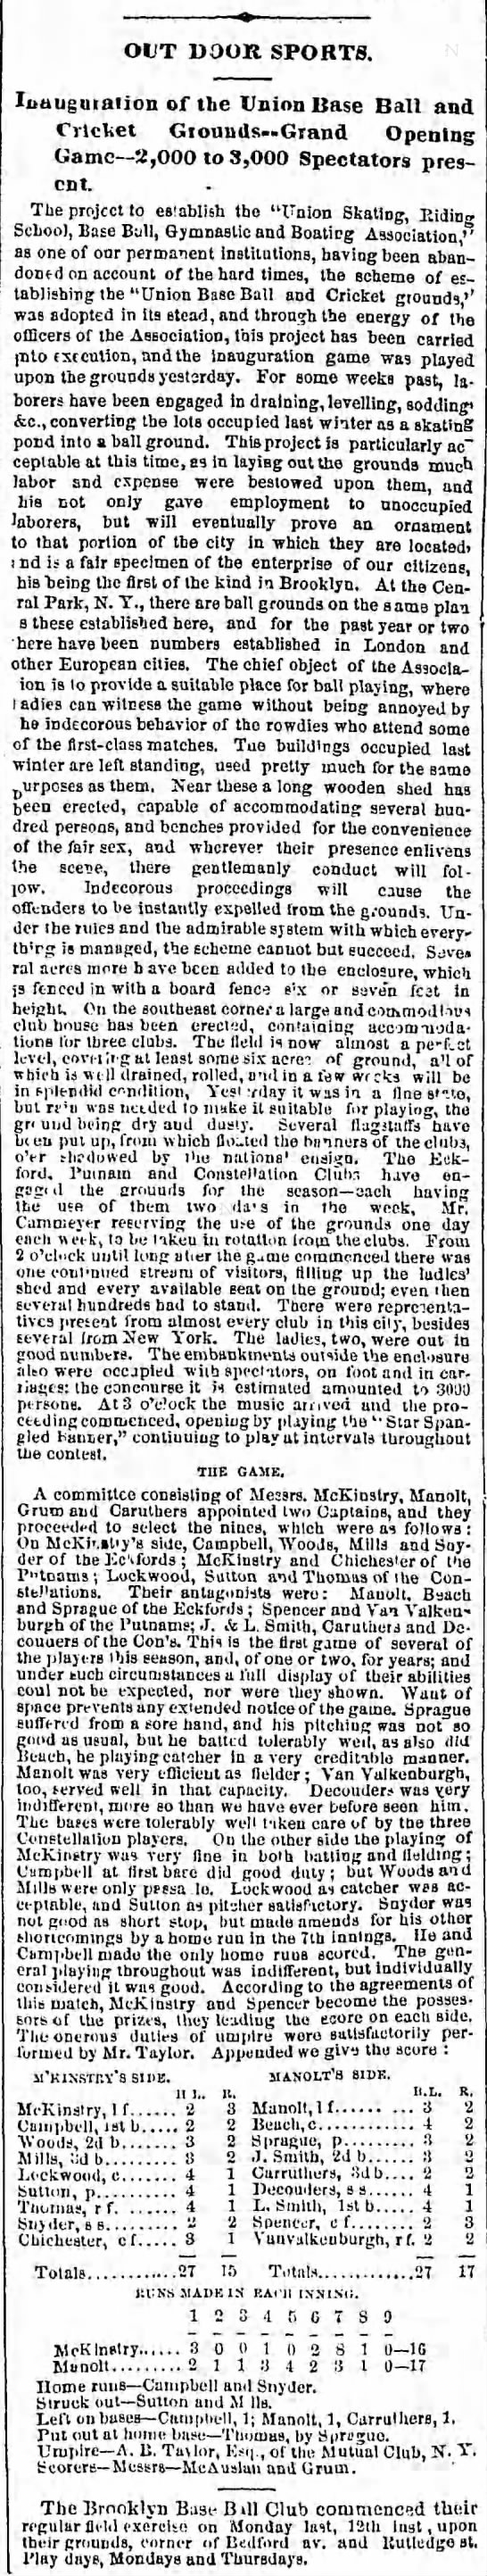 1862-Brooklyn Daily Eagle-First SSB in Baseball - 